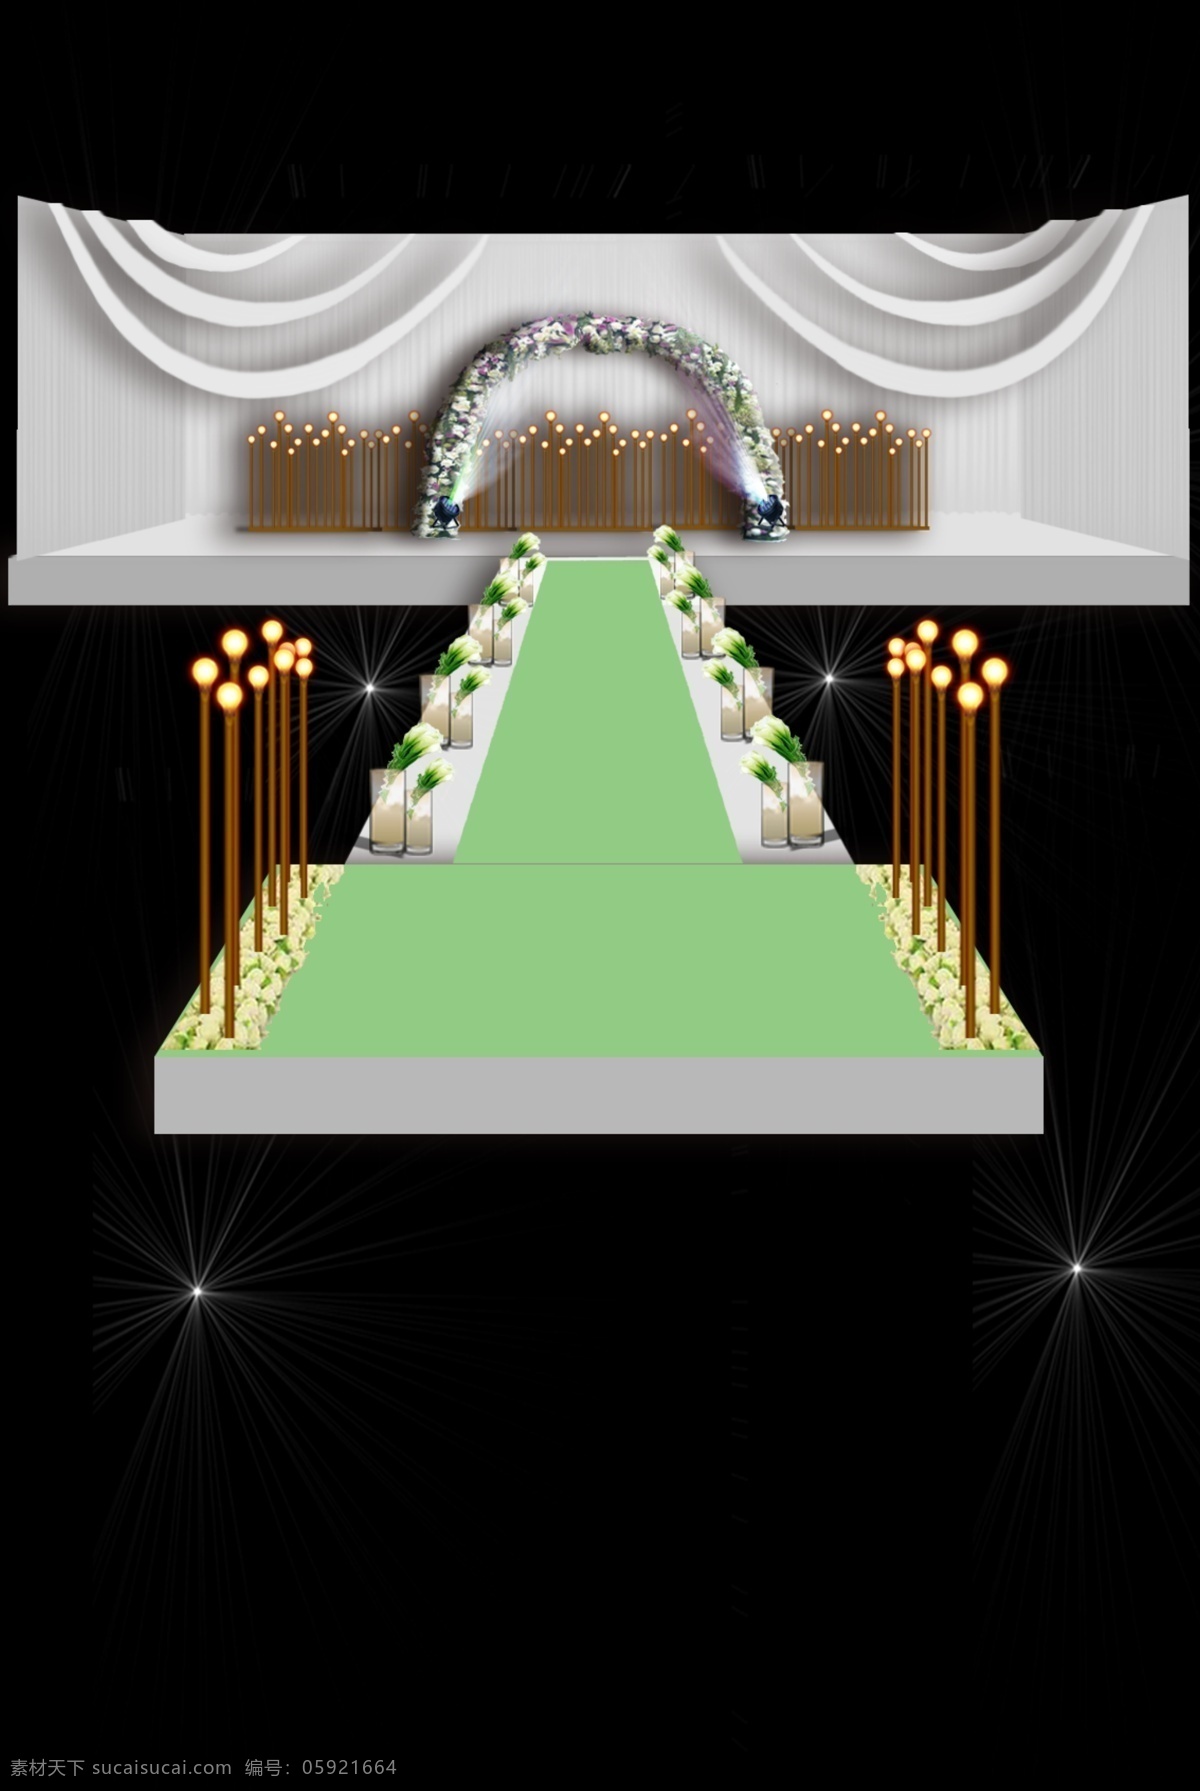 白色 绿色 婚礼 舞台 效果图 白绿色 婚礼舞台 鲜花 清新 灯 布幔 logo 牌 主题婚礼 婚礼主题设计 婚礼迎宾区 婚礼套餐 套系 桌位 创意设计 纱幔 黑色